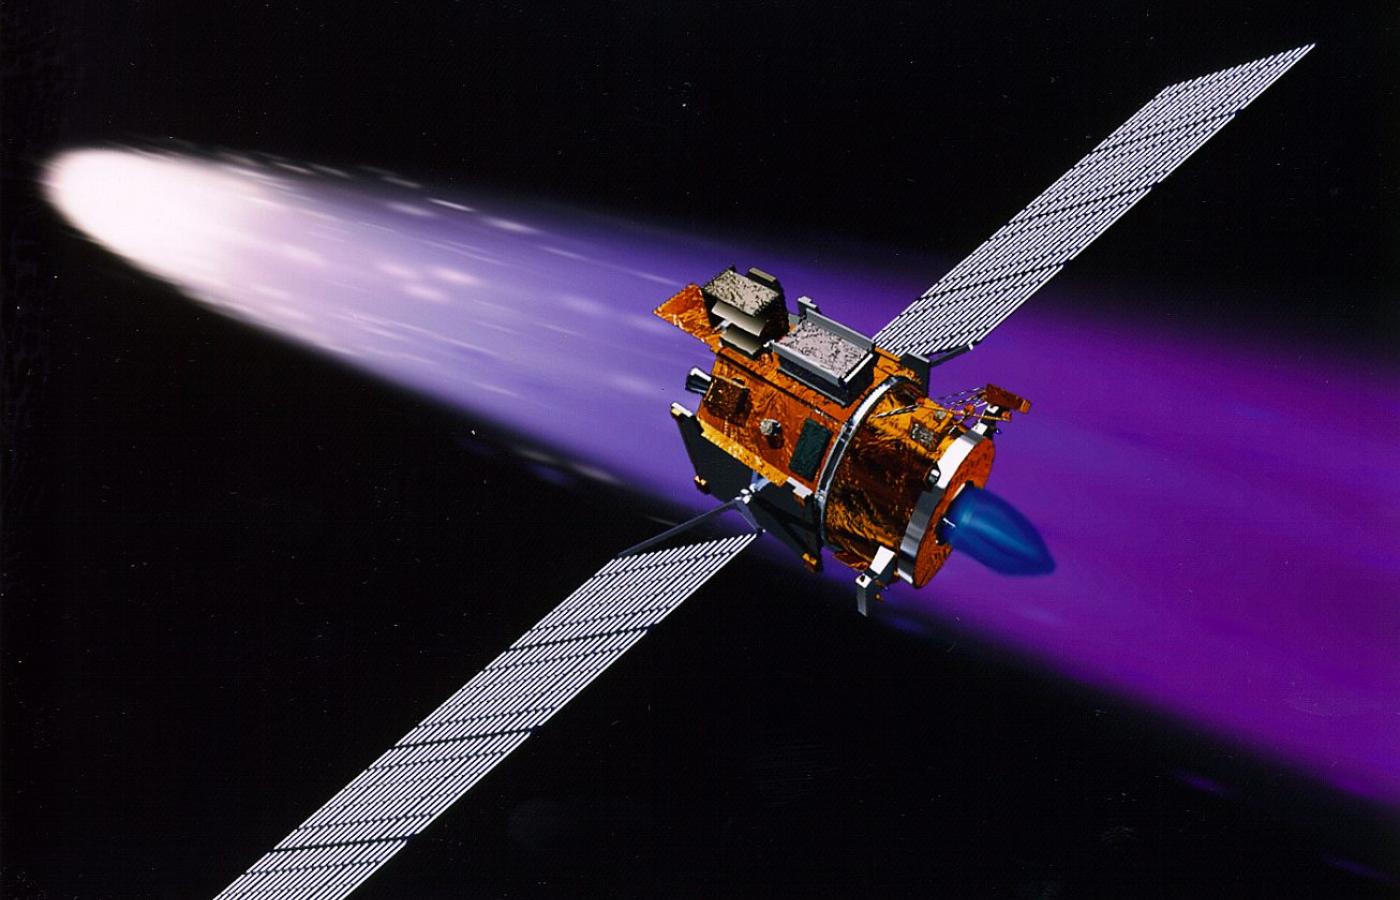 Napędzana silnikiem jonowym sonda Deep Space 1 zbliża się do komety 19P Borrelly. Misja została zakończona w 1999 r.